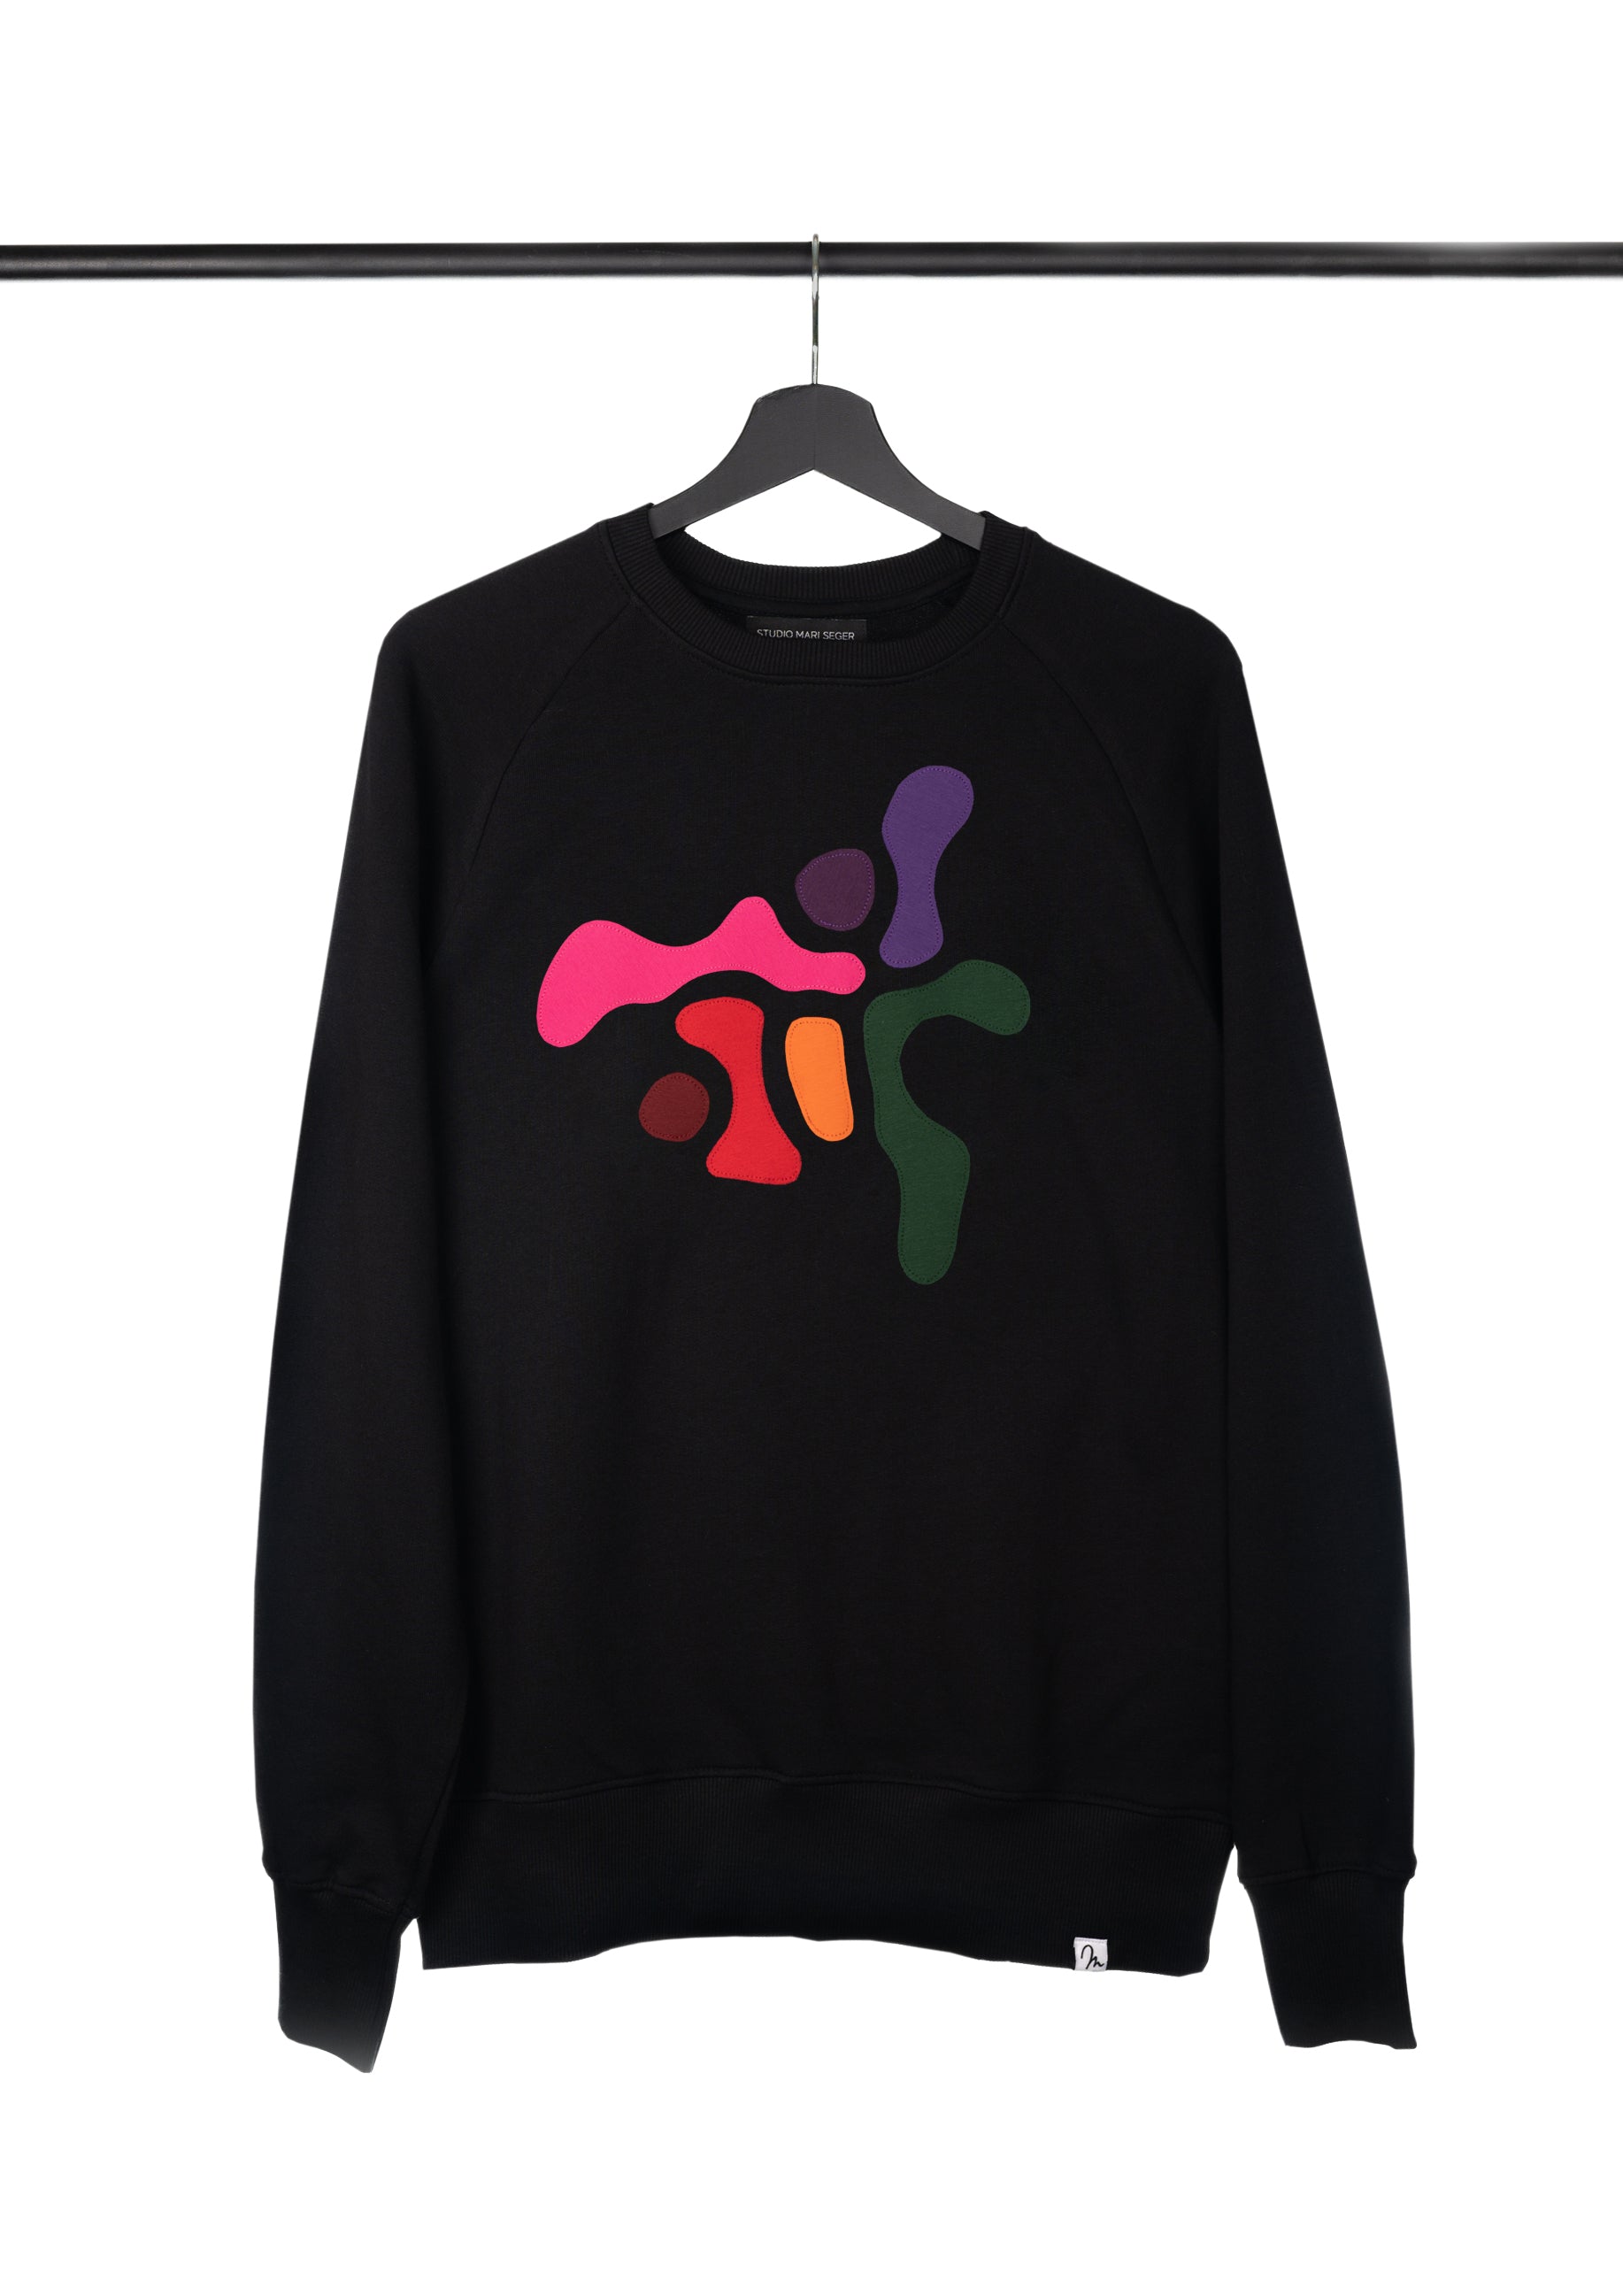 AYAKO / sweatshirt, size S